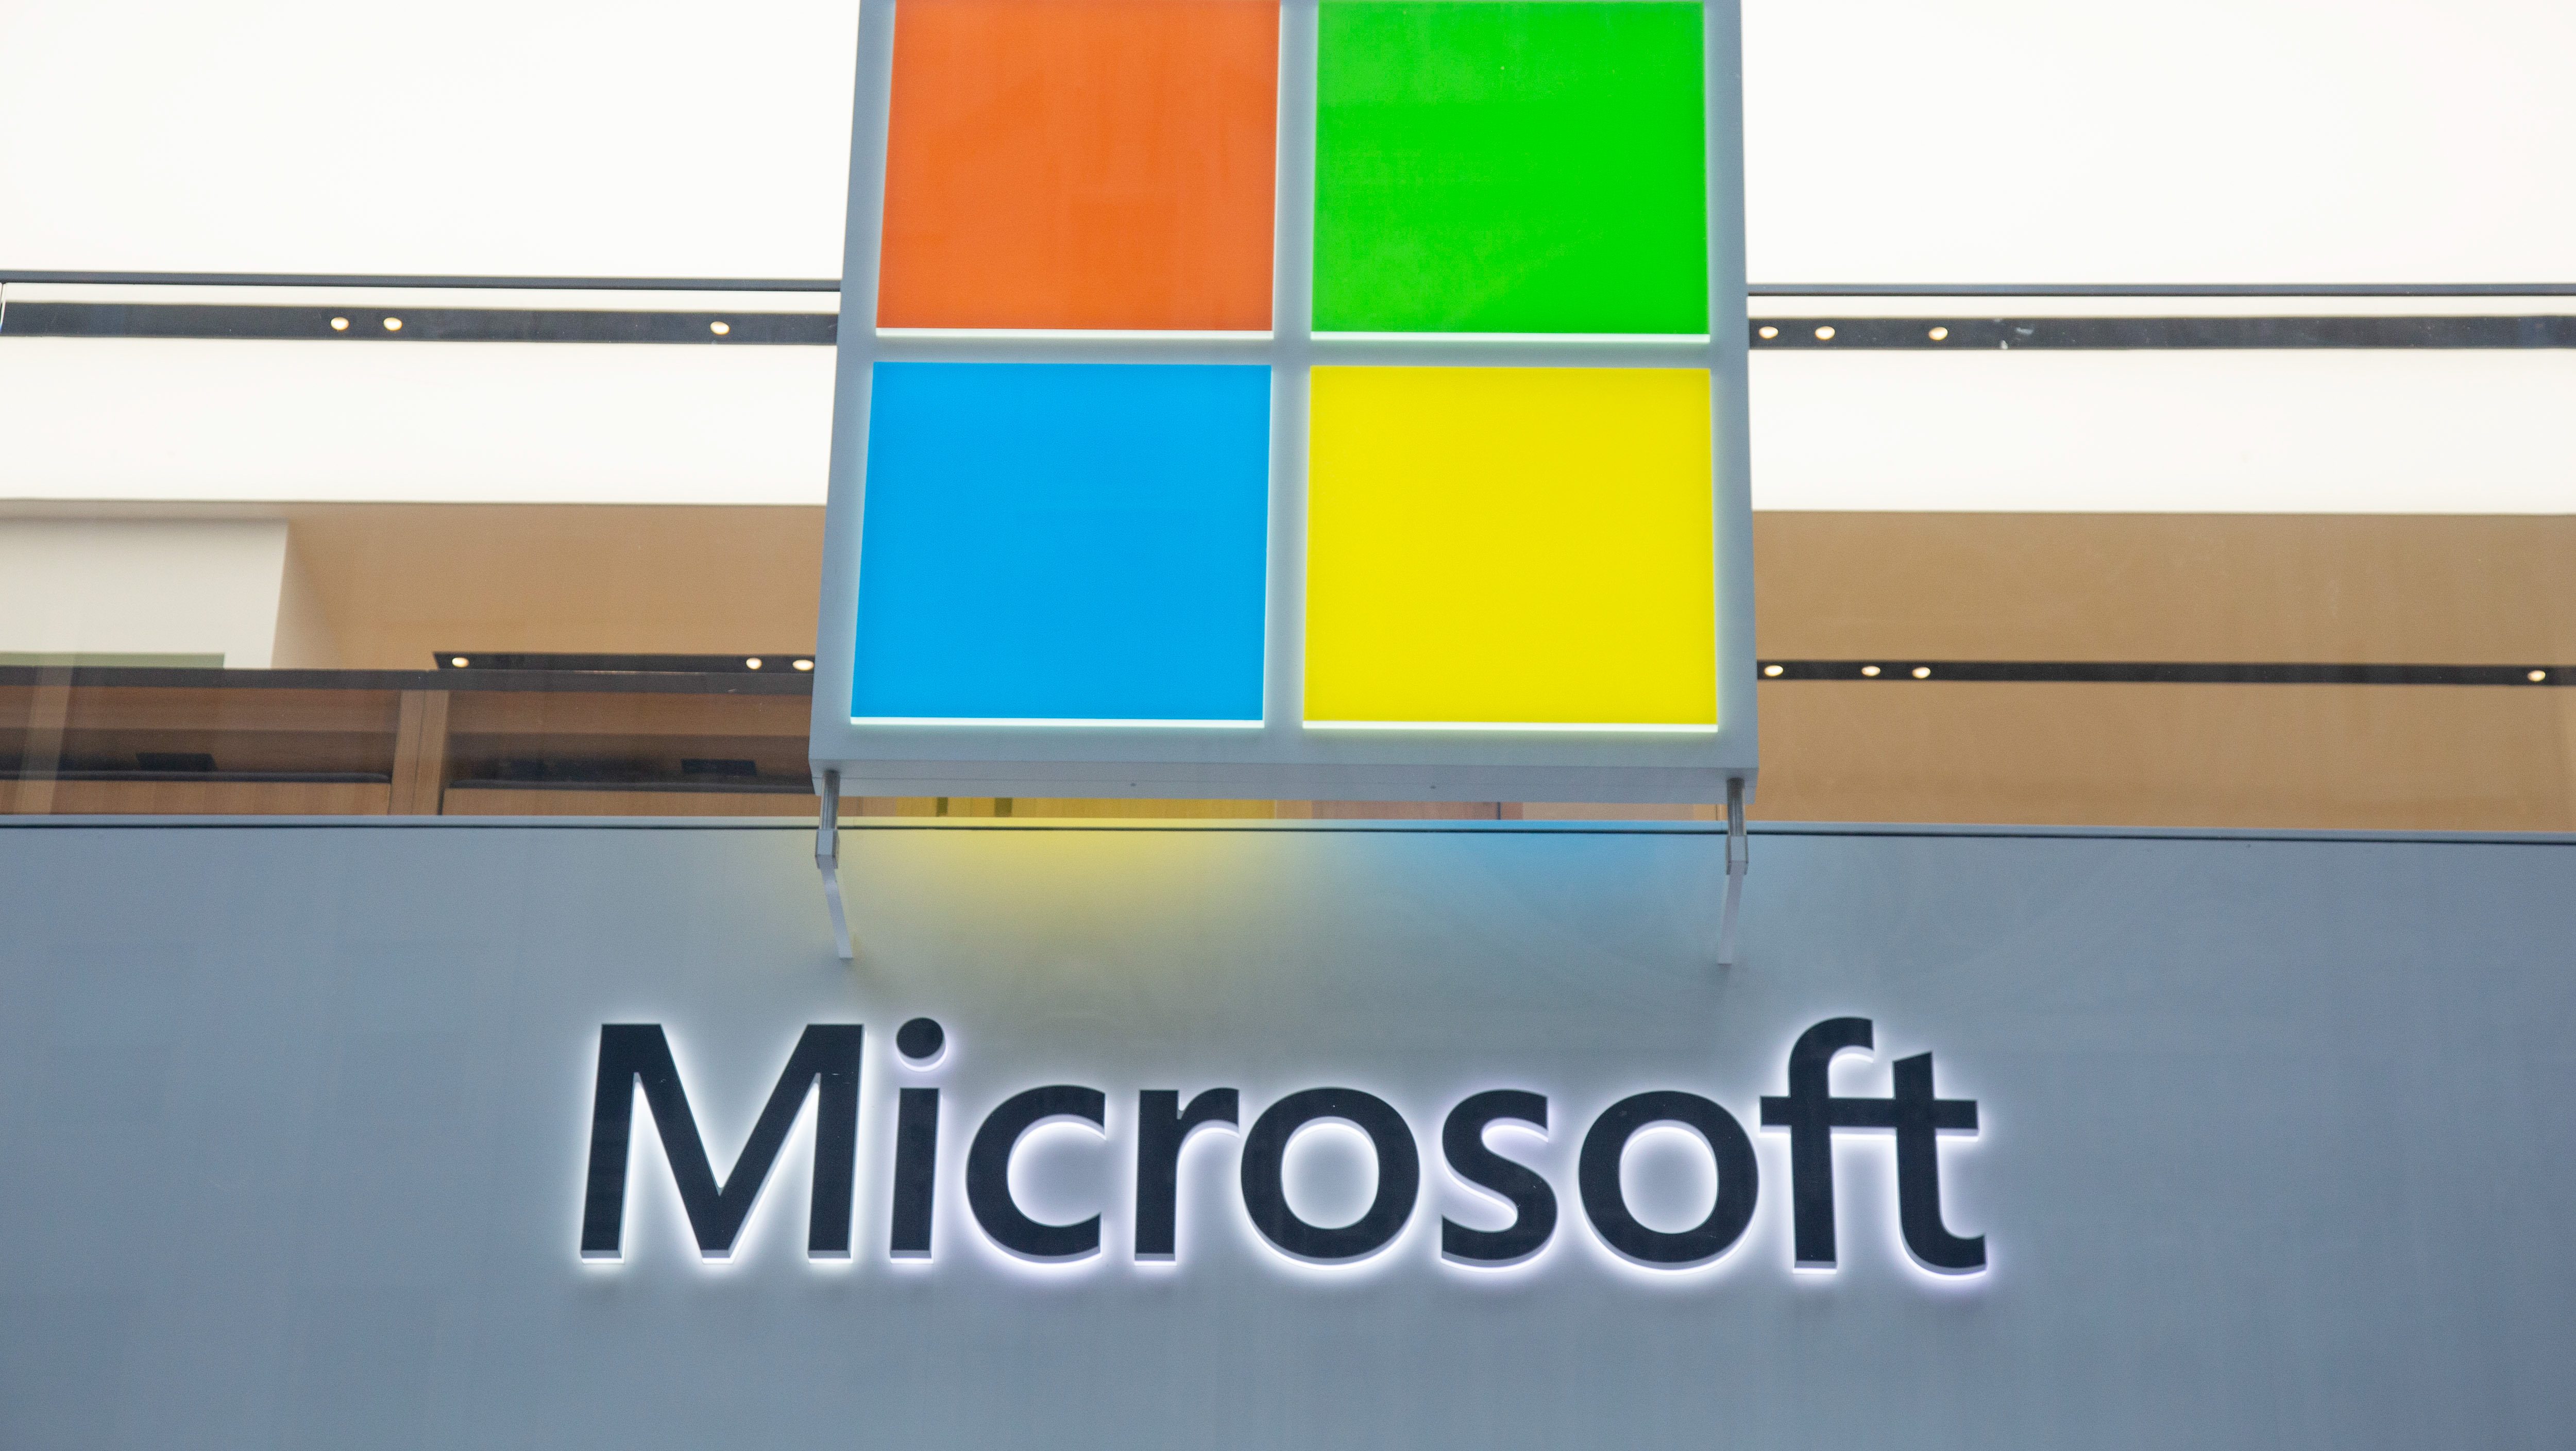 Şirketin logosunun bulunduğu bir Microsoft mağazası girişi